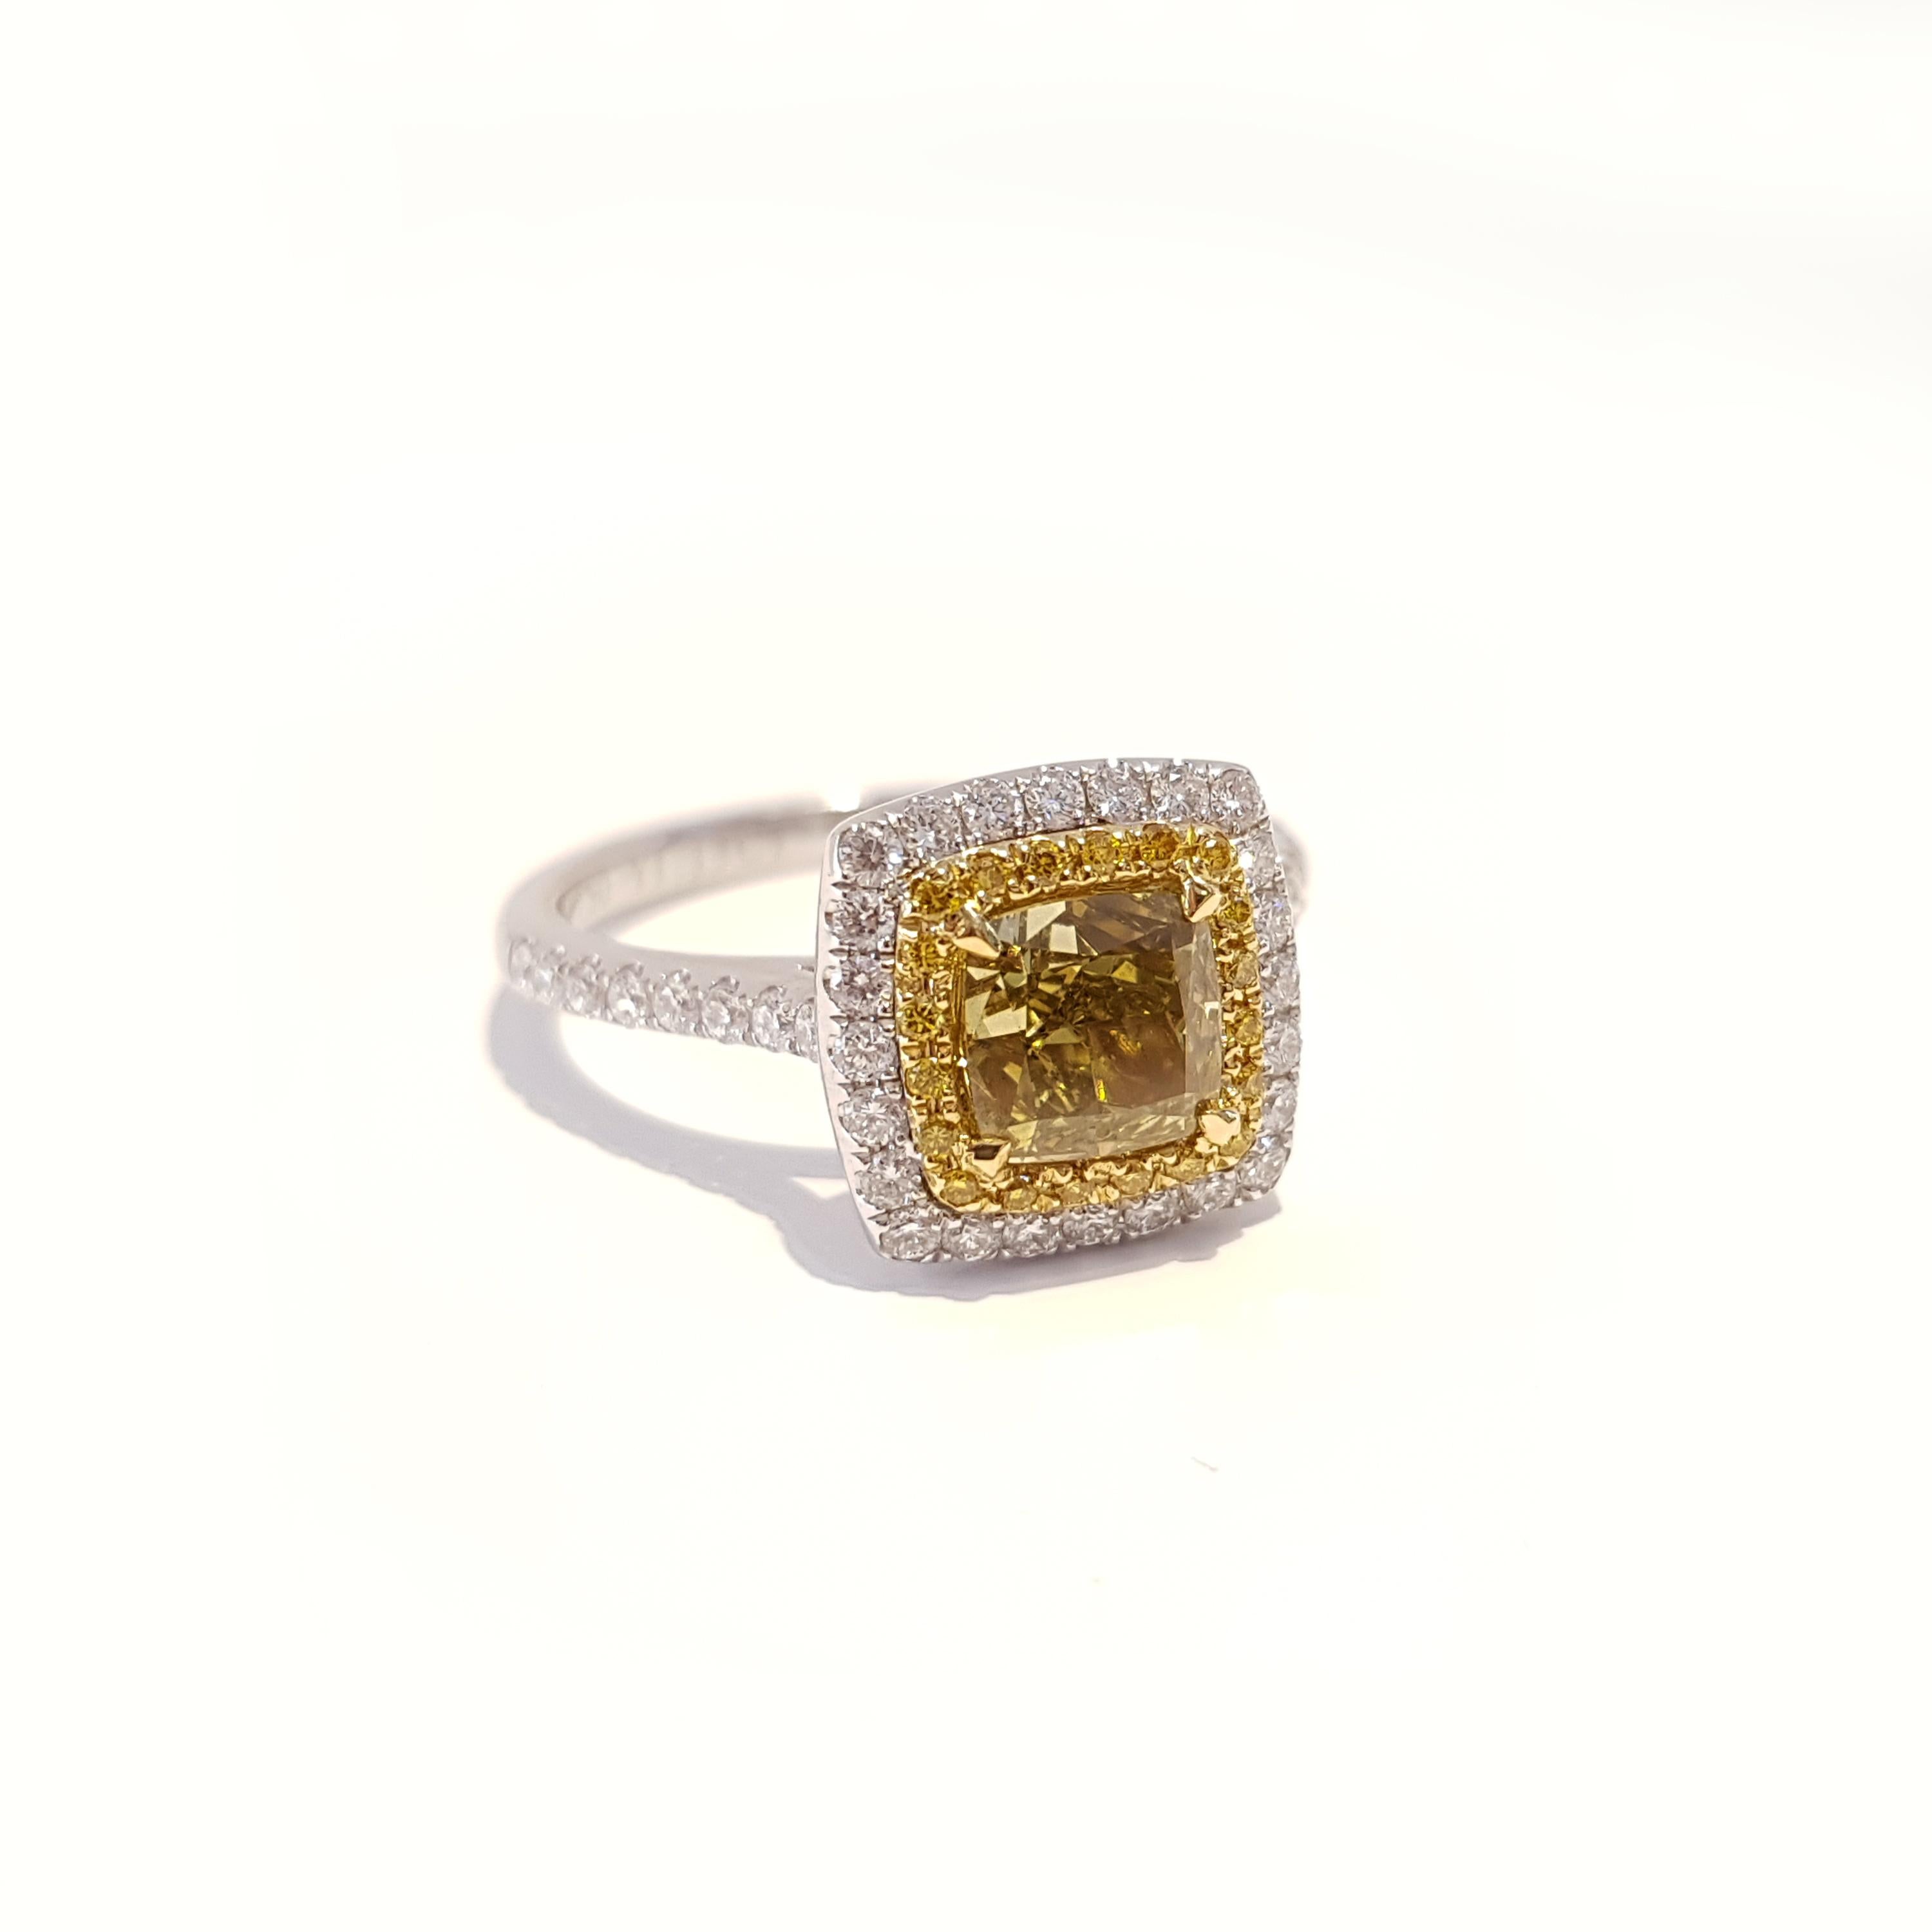 GIA Certified 1.56 Carat Yellow Diamond 18 Karat White Gold Ring For Sale 2